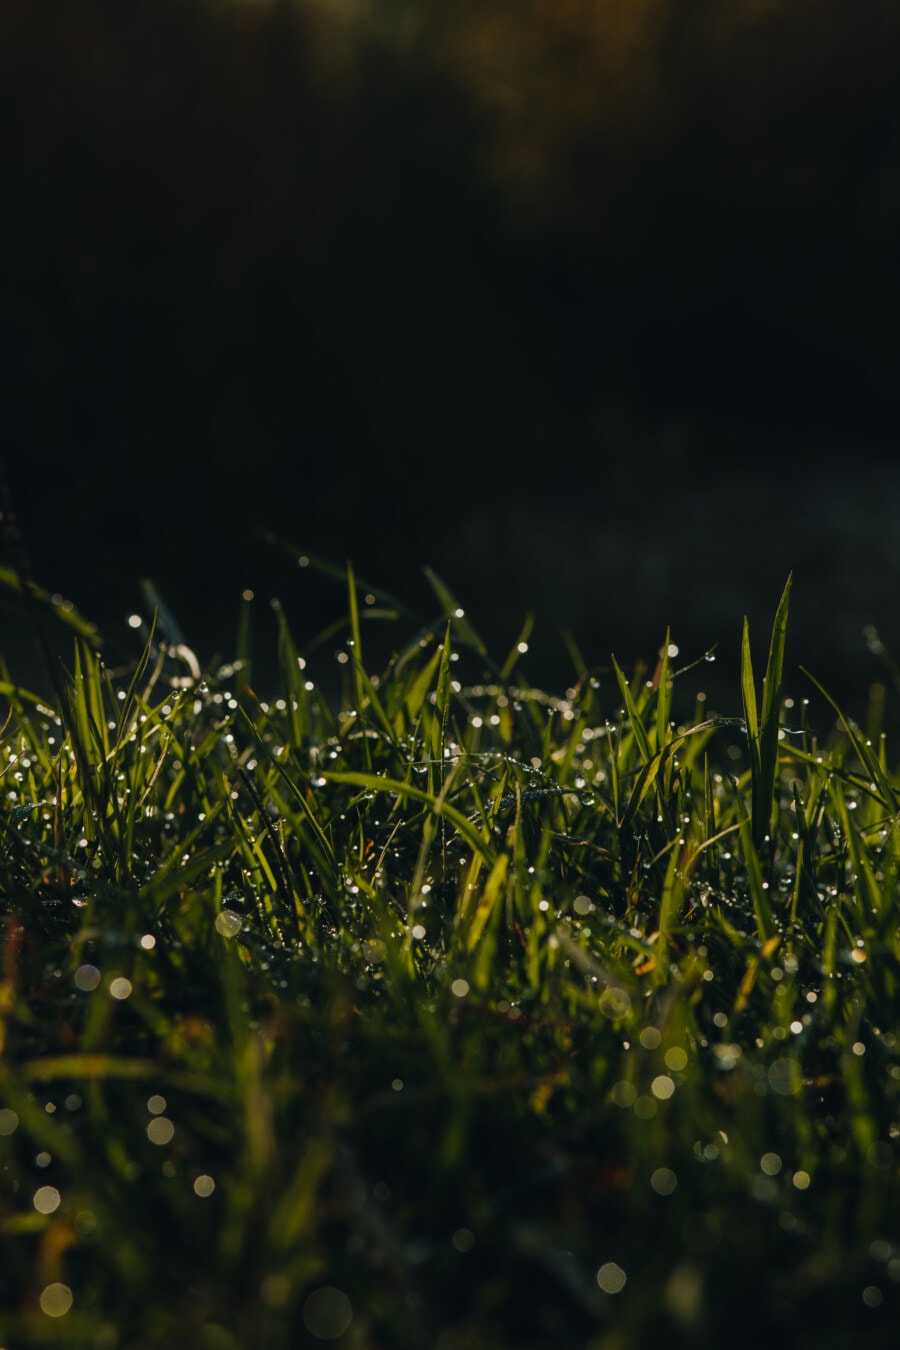 posas, gräsmark, dagg, gräs, fukt, våt, kondens, vattendroppar, sommar, gräsmatta